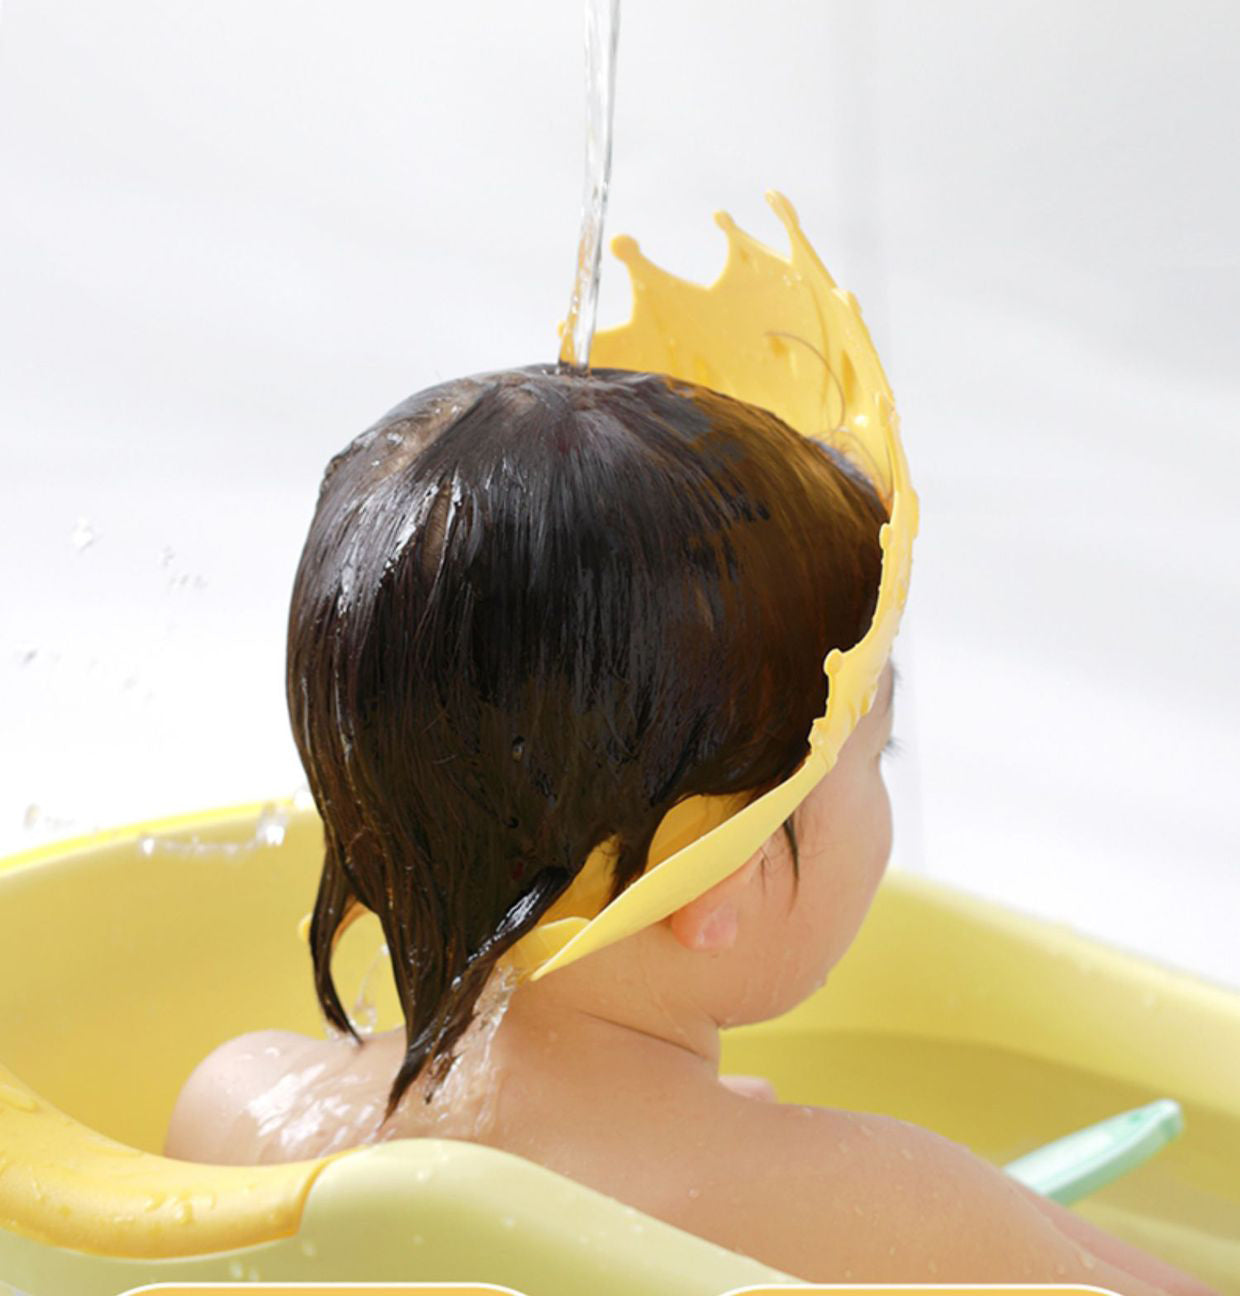 Shampoo Crown Cap™ - Mai più lacrime durante il bagno - Cuffia da bagno